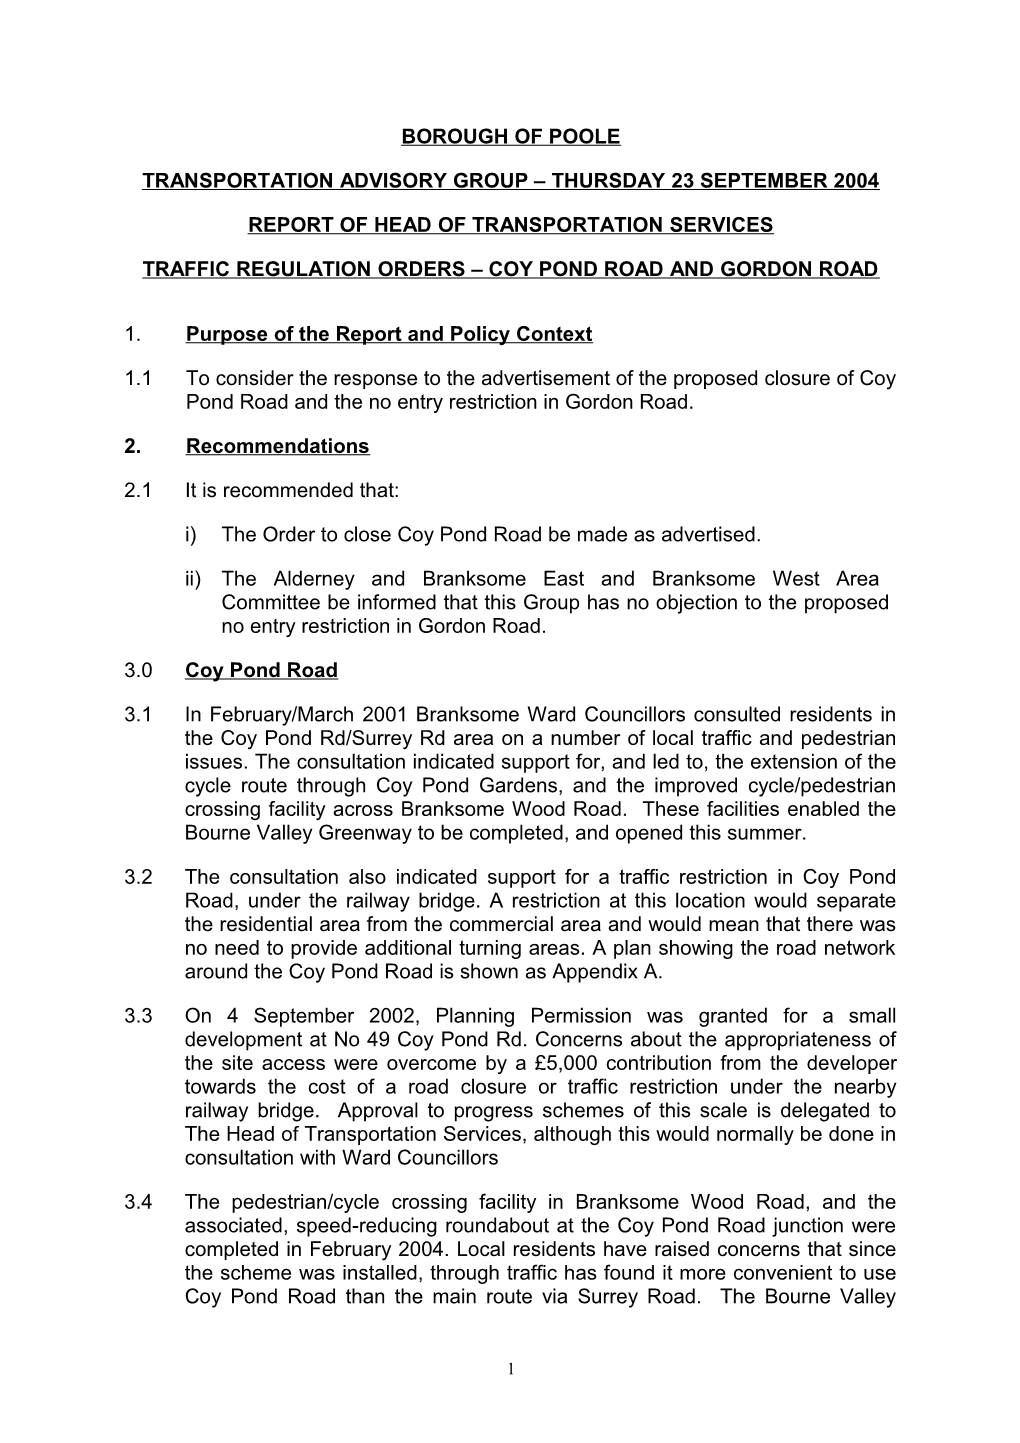 PFD - Councillor Parker - 1 October 2004 - Coy Pond Road - Report